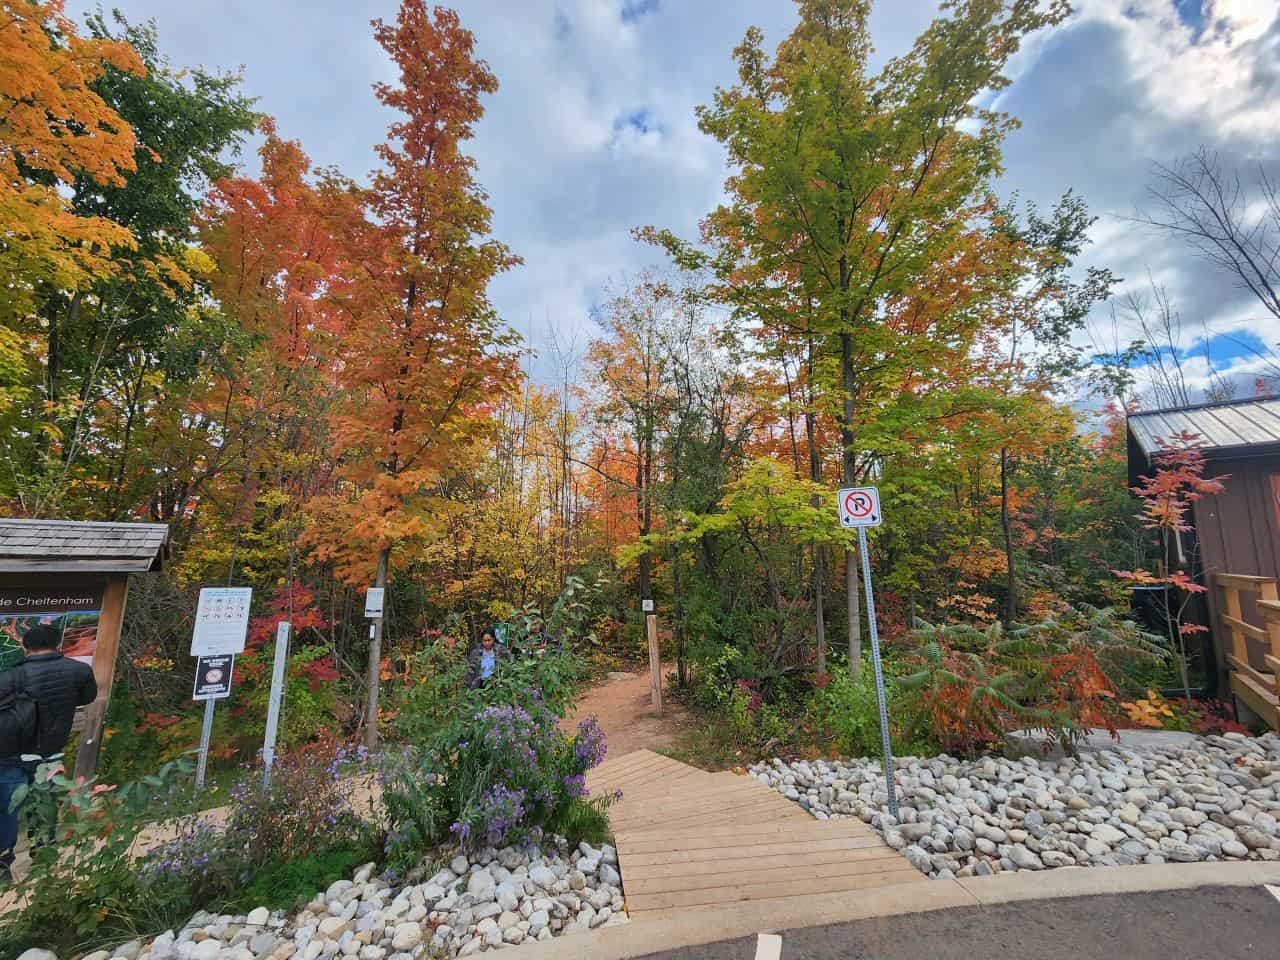 Cheltenham Walkway to the autumn seasons in Ontario Canada